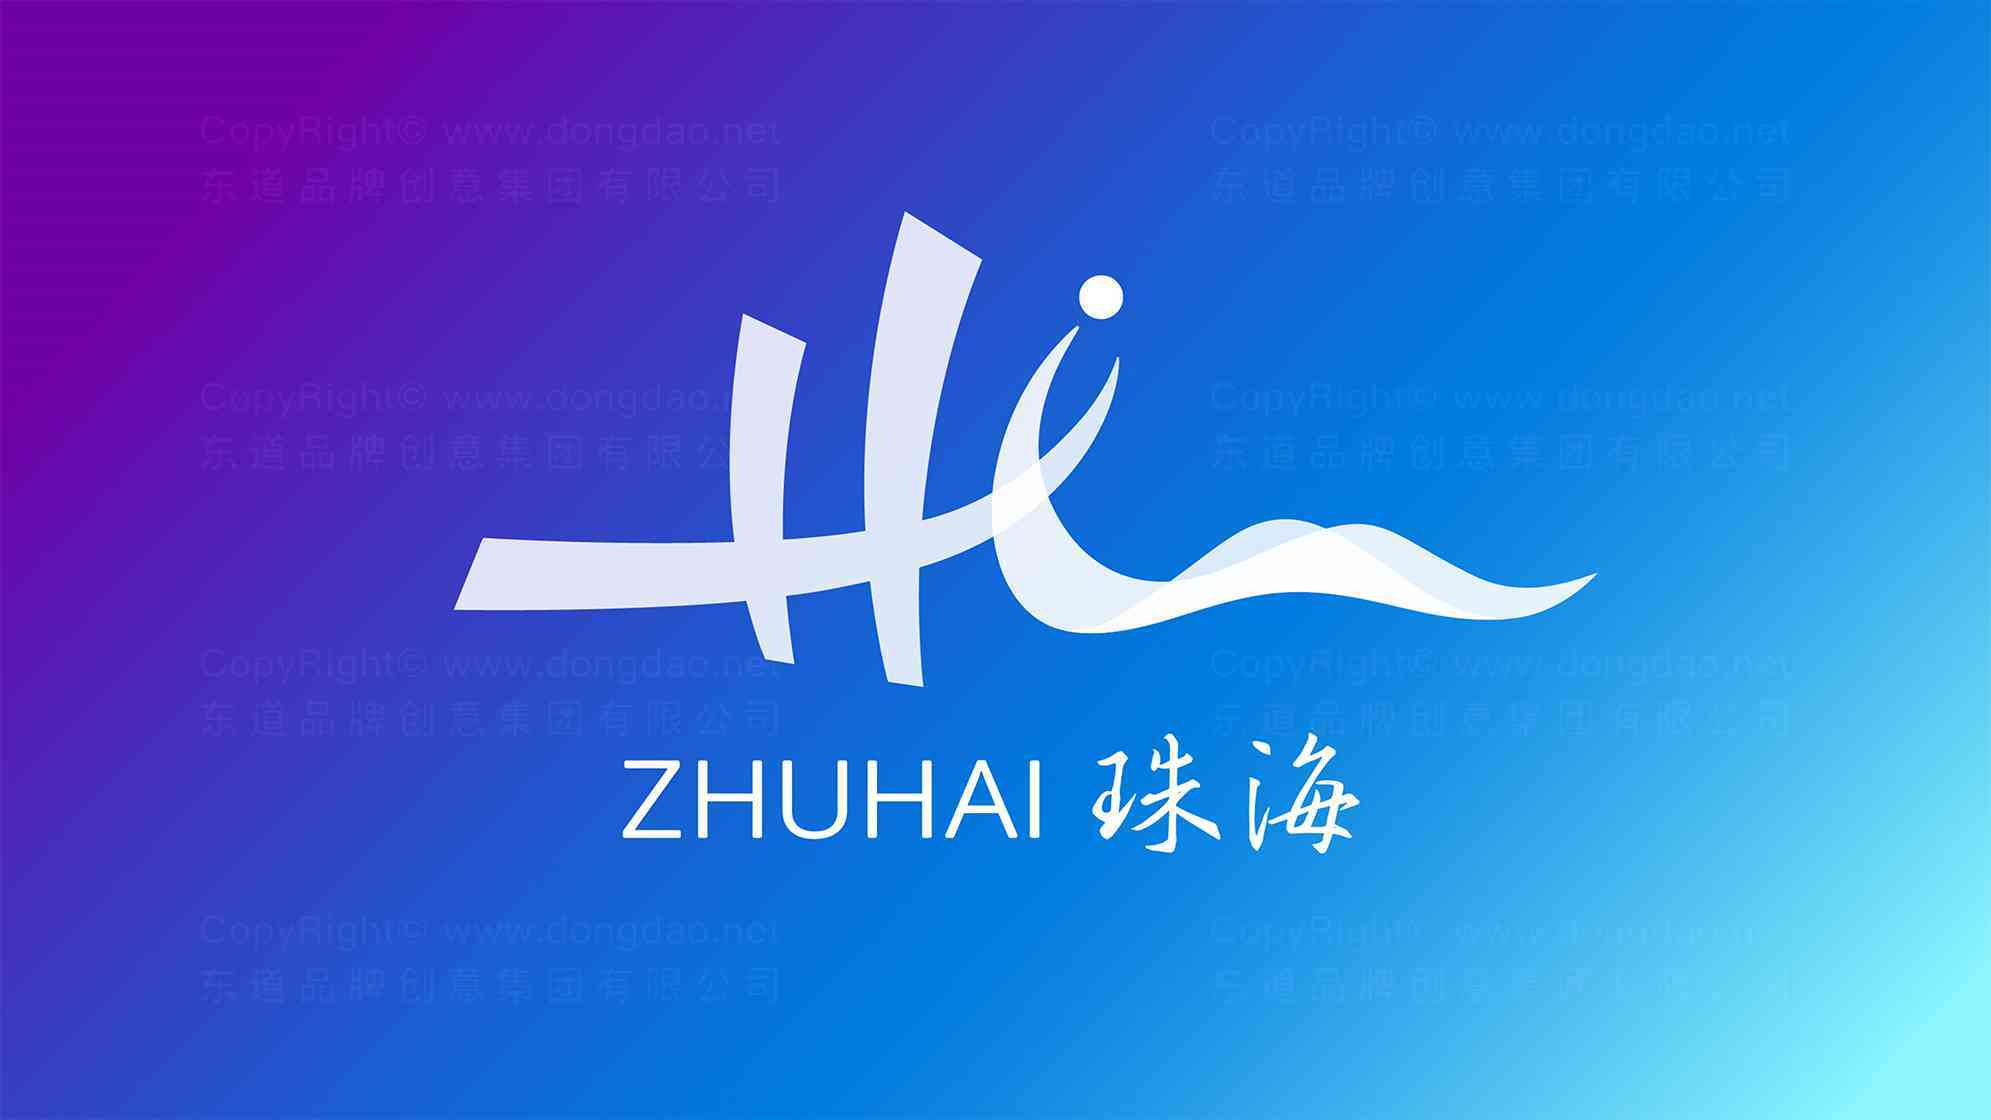 珠海城市logo设计图片素材